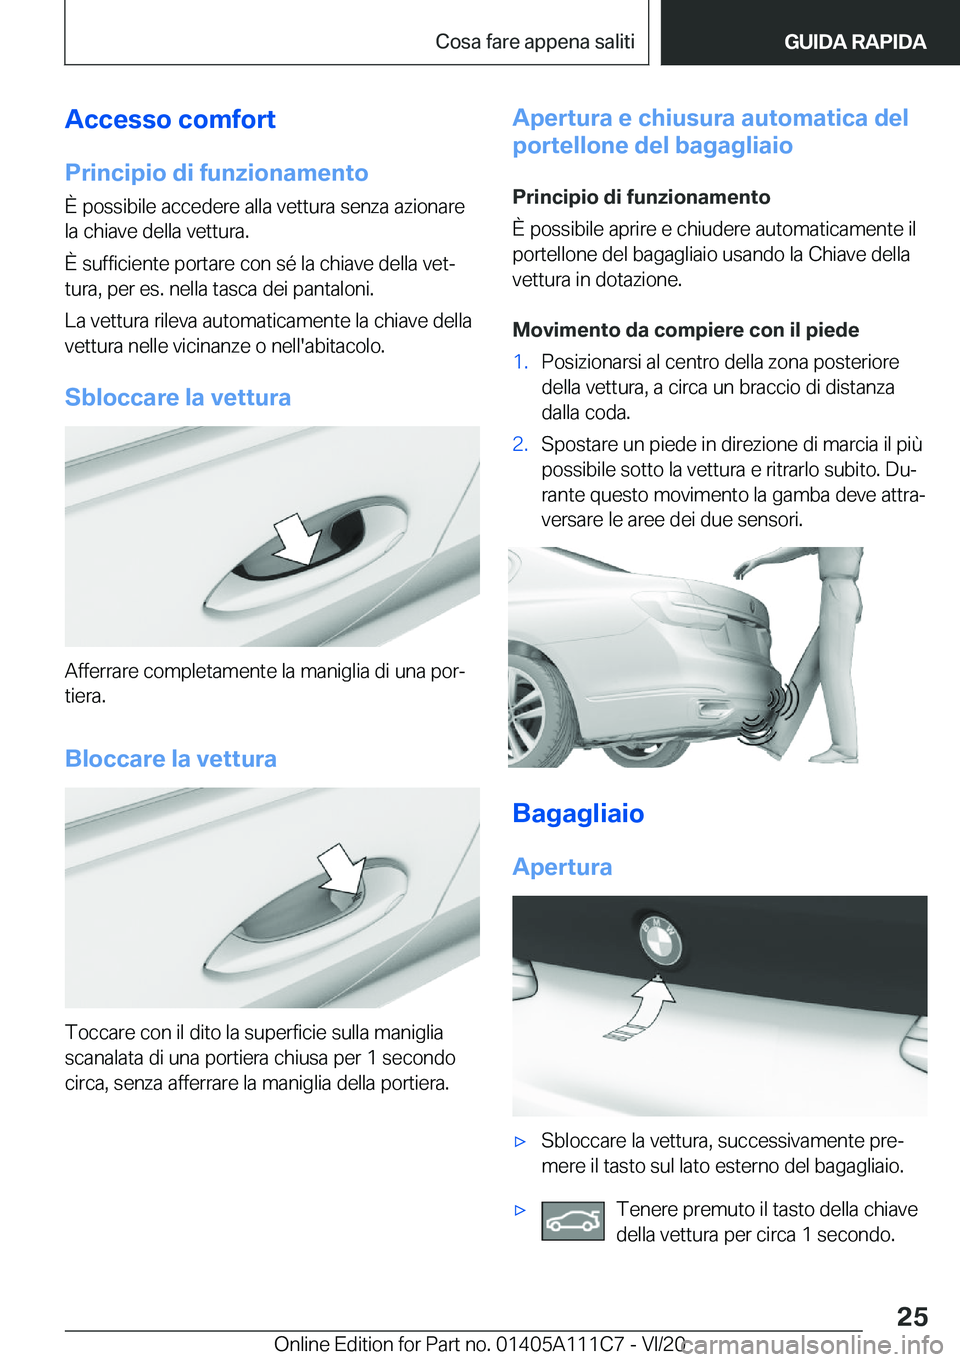 BMW 3 SERIES SEDAN PLUG-IN HYBRID 2021  Libretti Di Uso E manutenzione (in Italian) �A�c�c�e�s�s�o��c�o�m�f�o�r�t
�P�r�i�n�c�i�p�i�o��d�i��f�u�n�z�i�o�n�a�m�e�n�t�o �